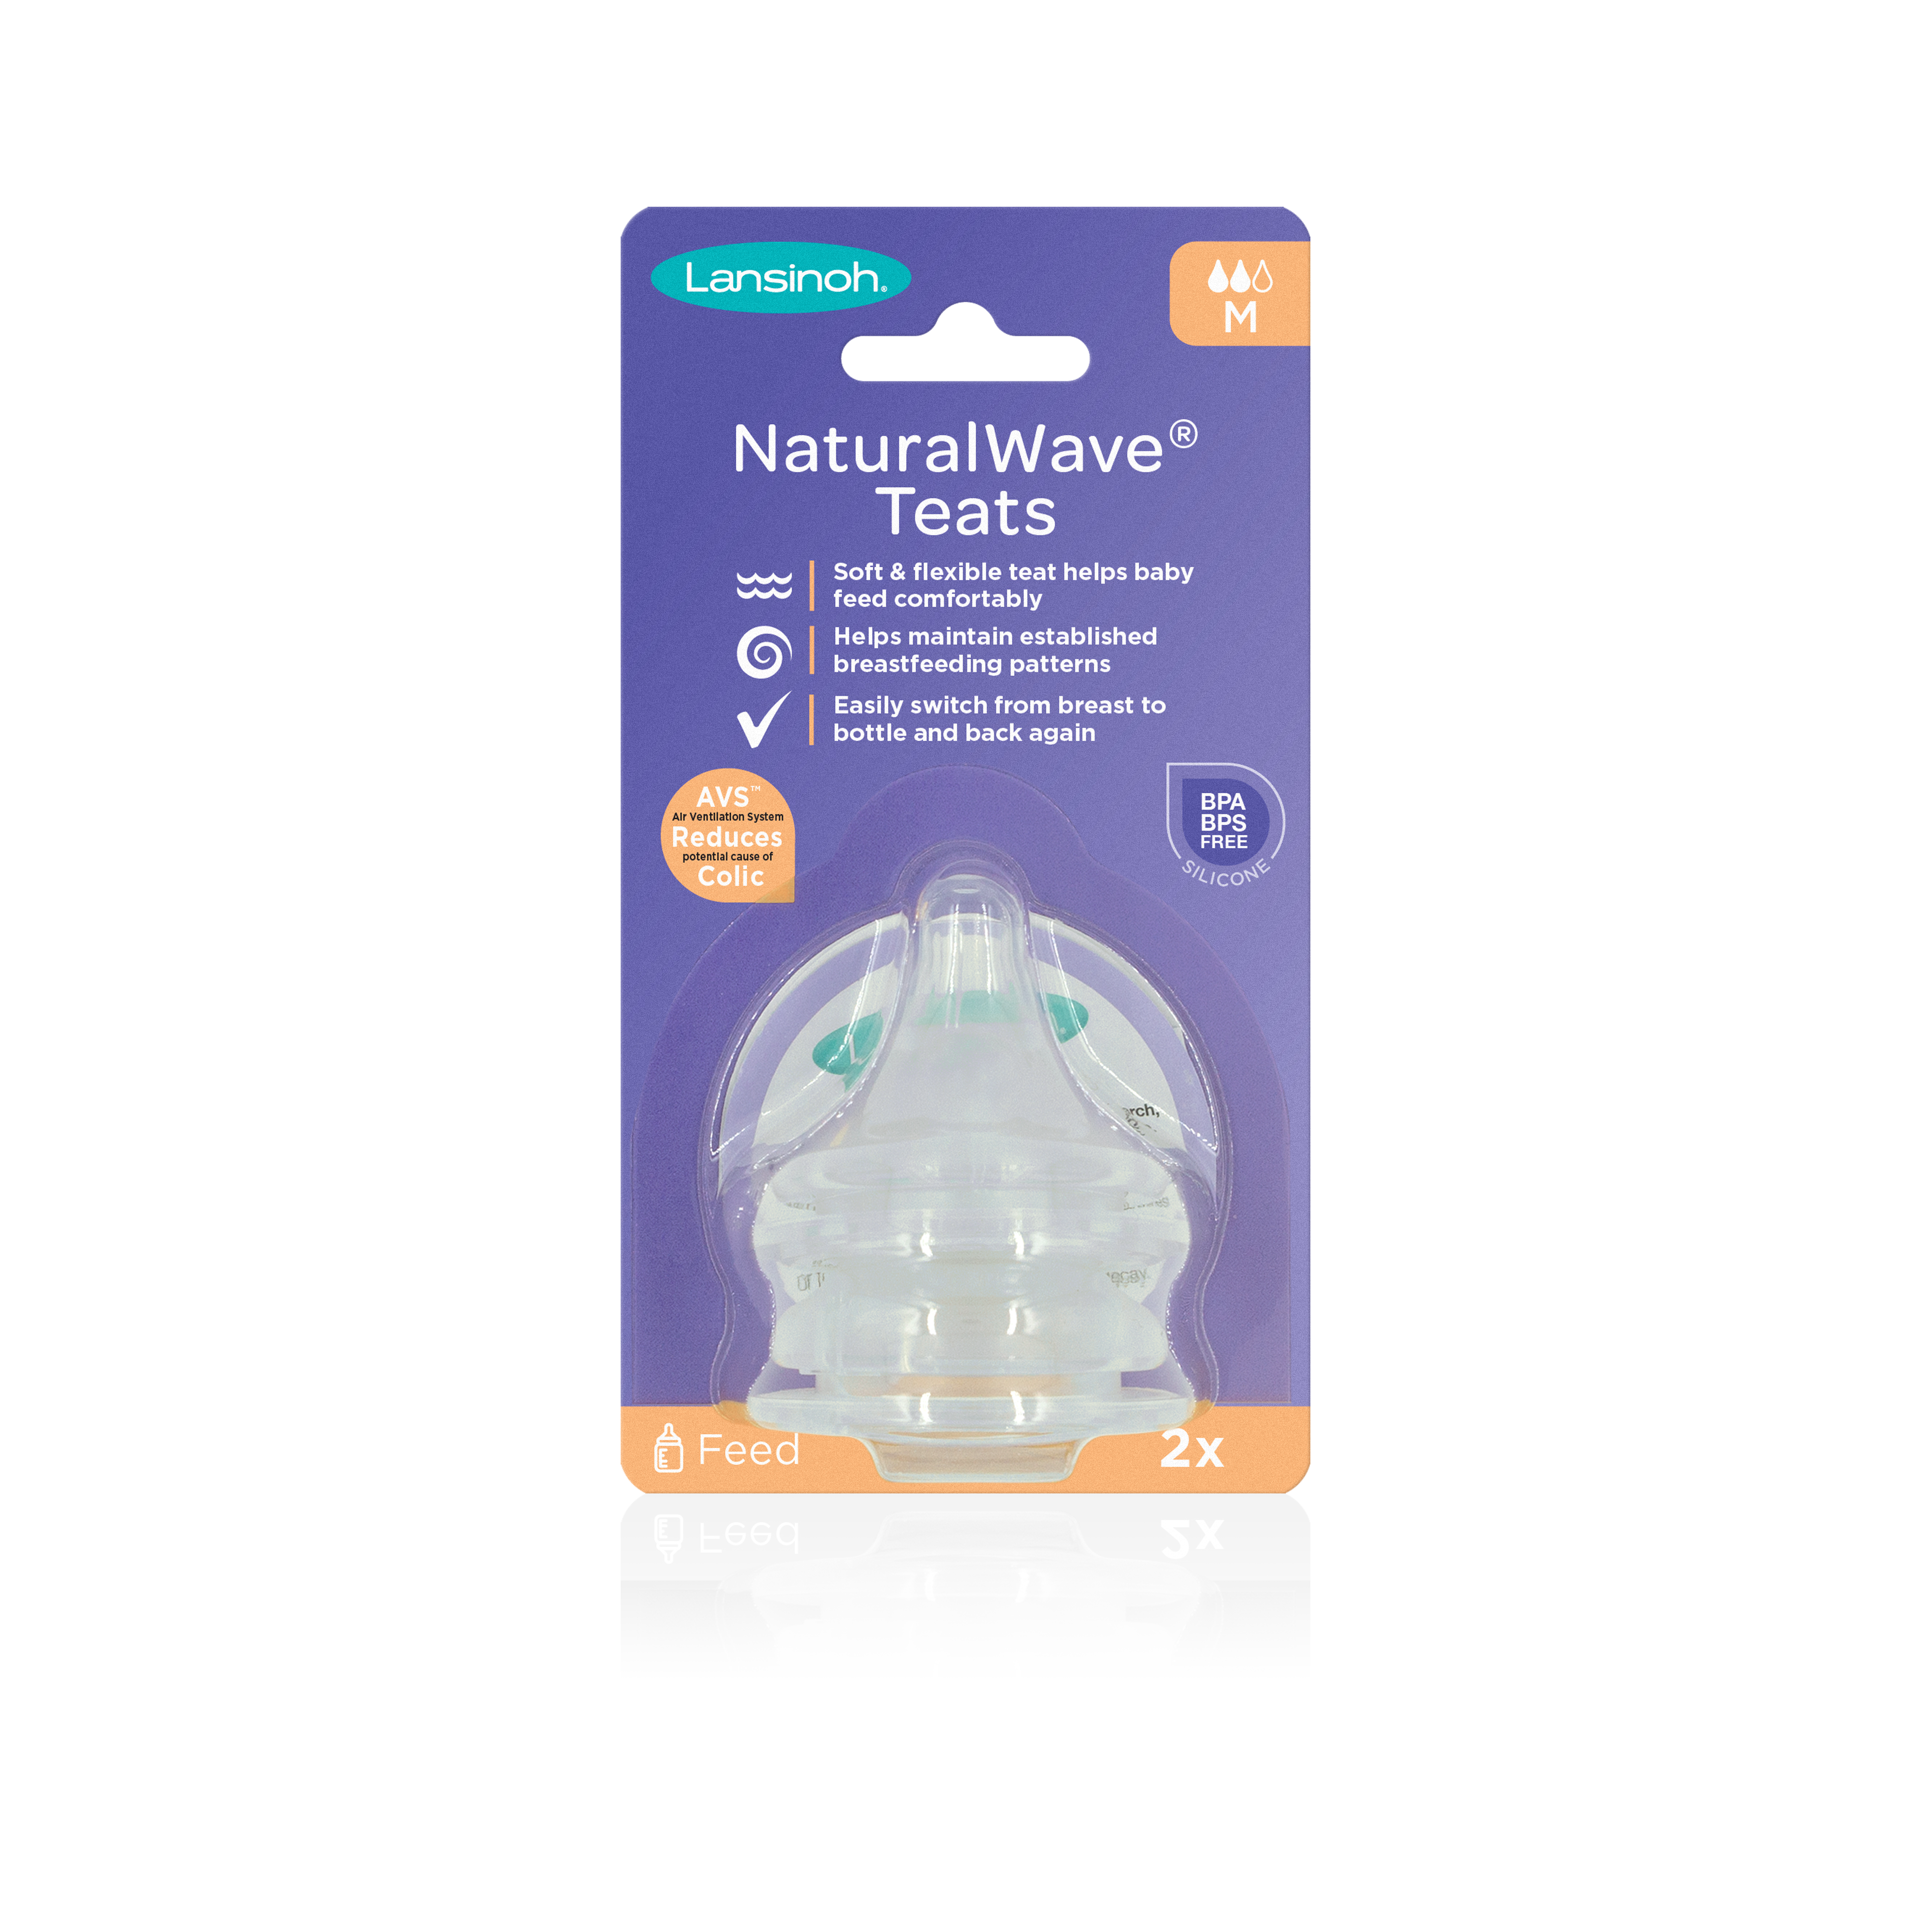 Lansinoh NaturalWave cumeľ stredný prietok pre dojčené deti uľahčuje prechod na kŕmenie z fľaše